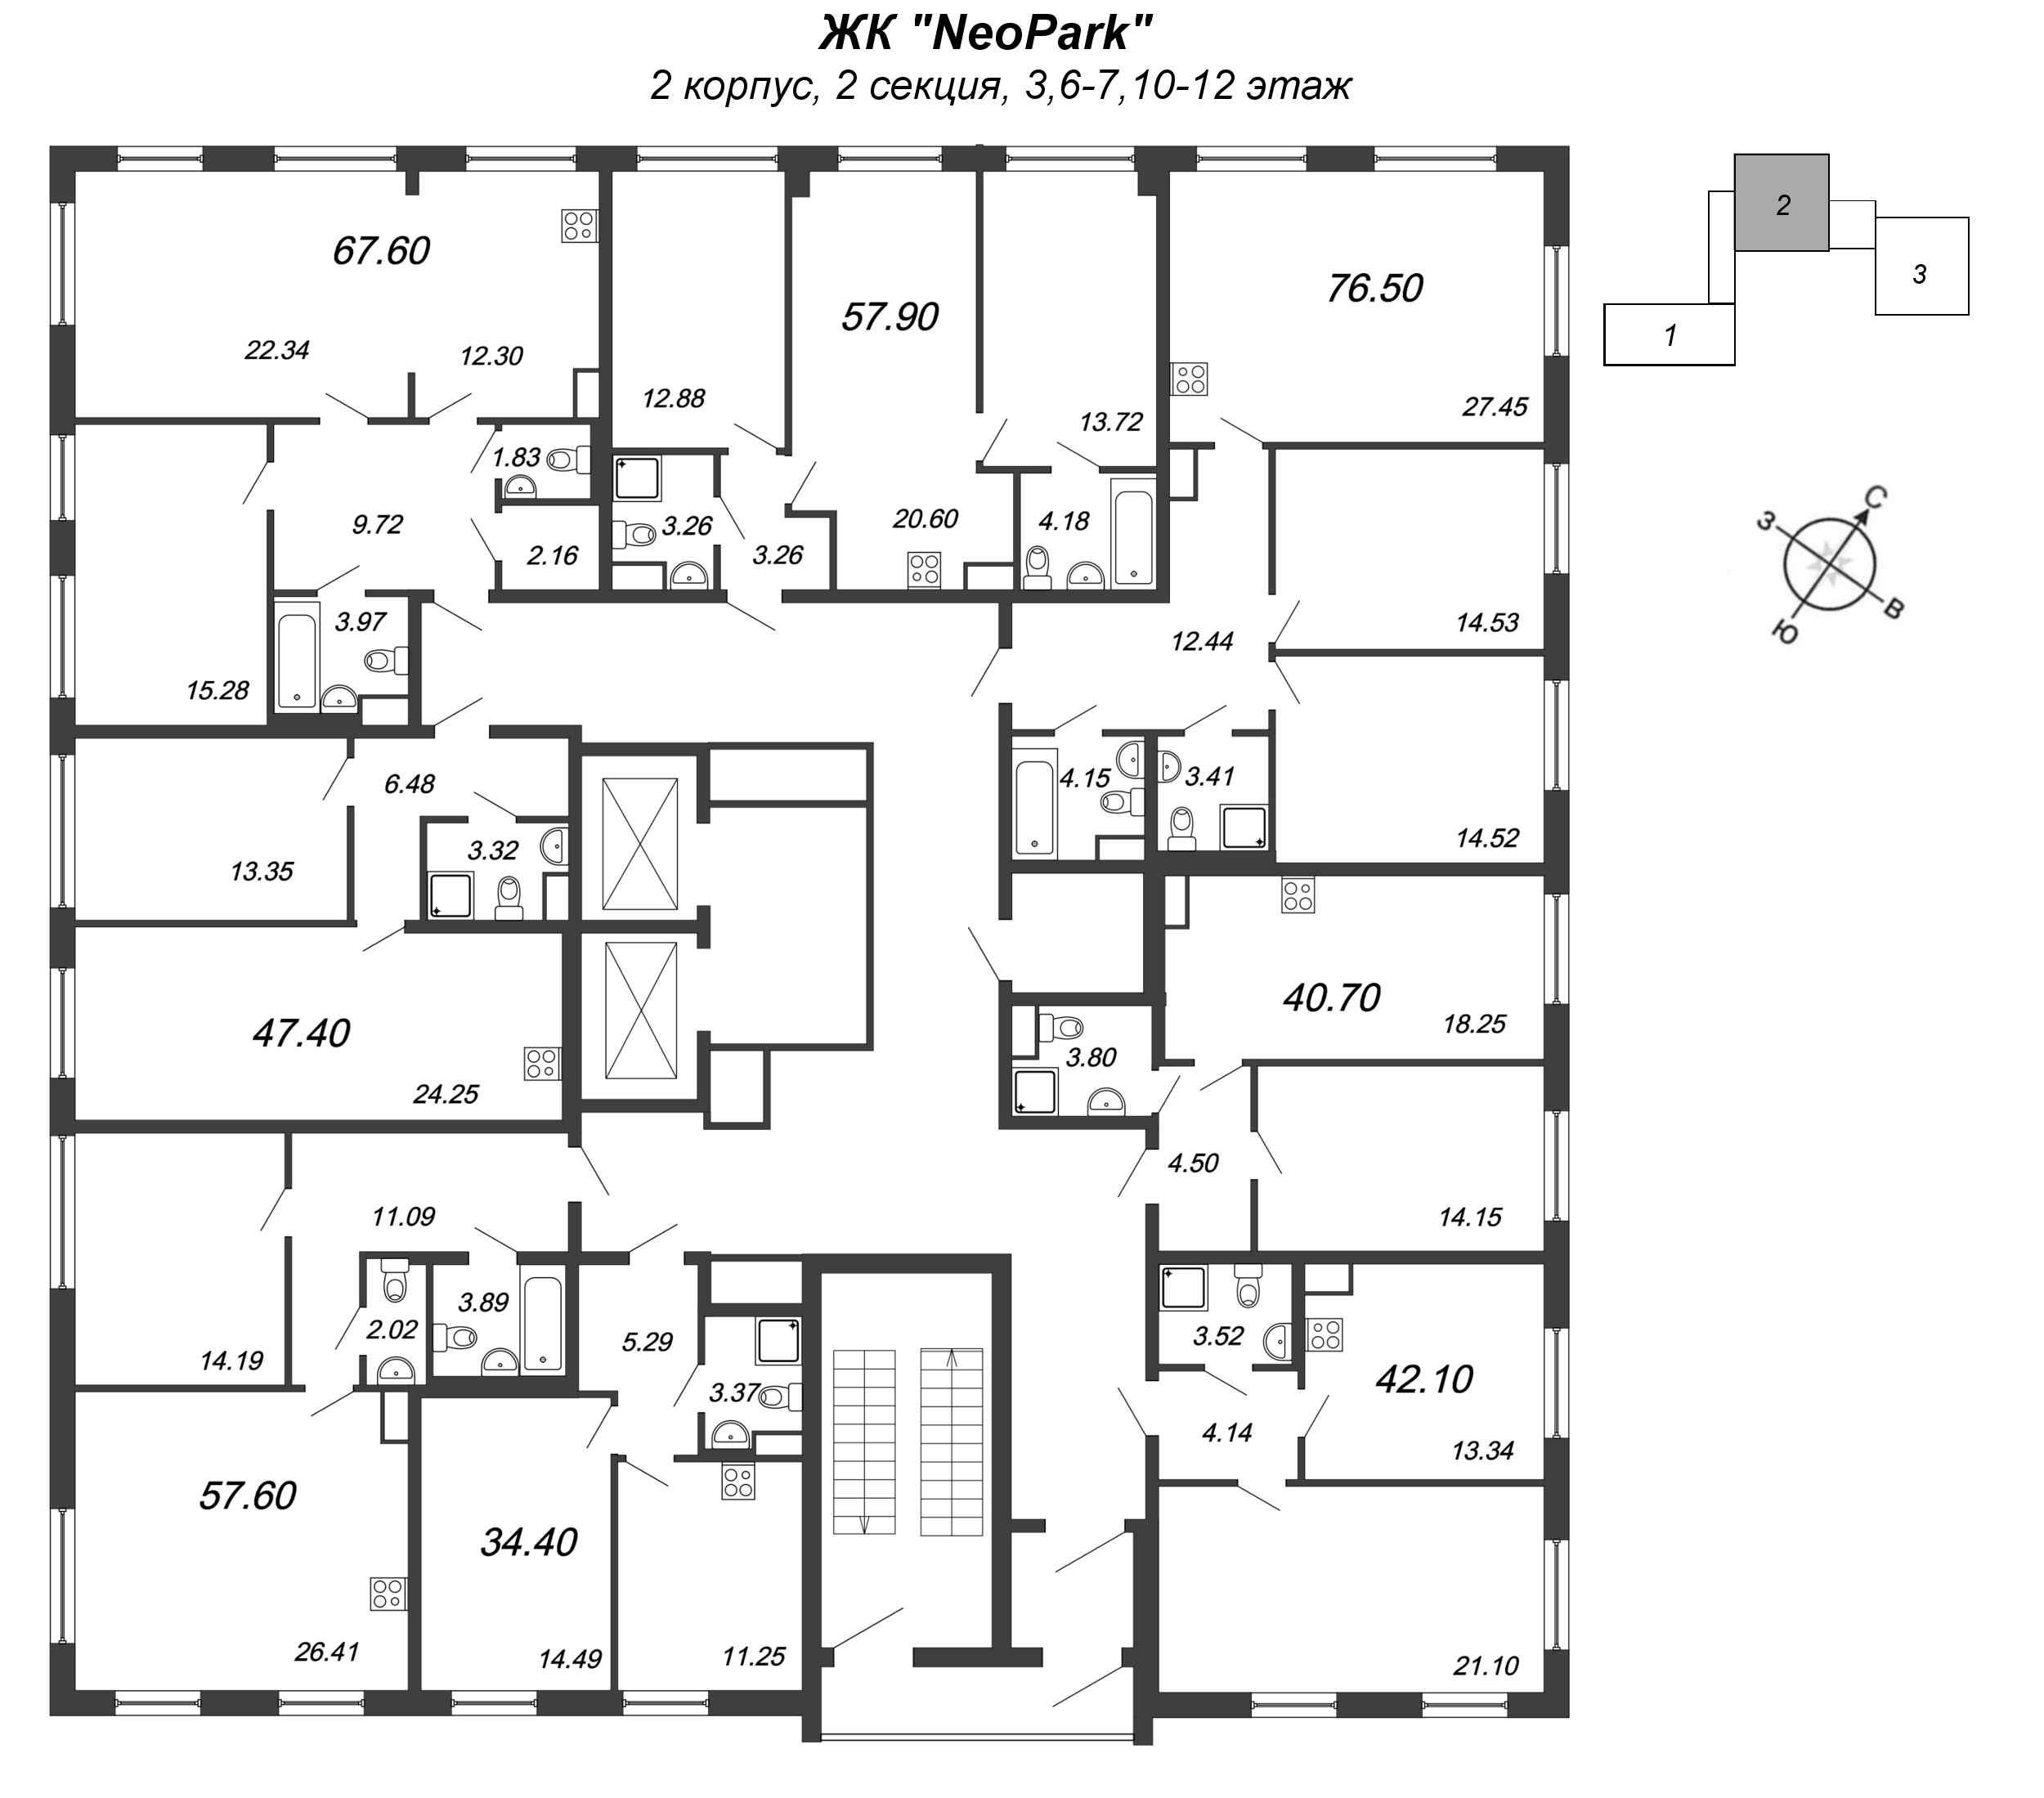 2-комнатная (Евро) квартира, 57.7 м² в ЖК "NeoPark" - планировка этажа